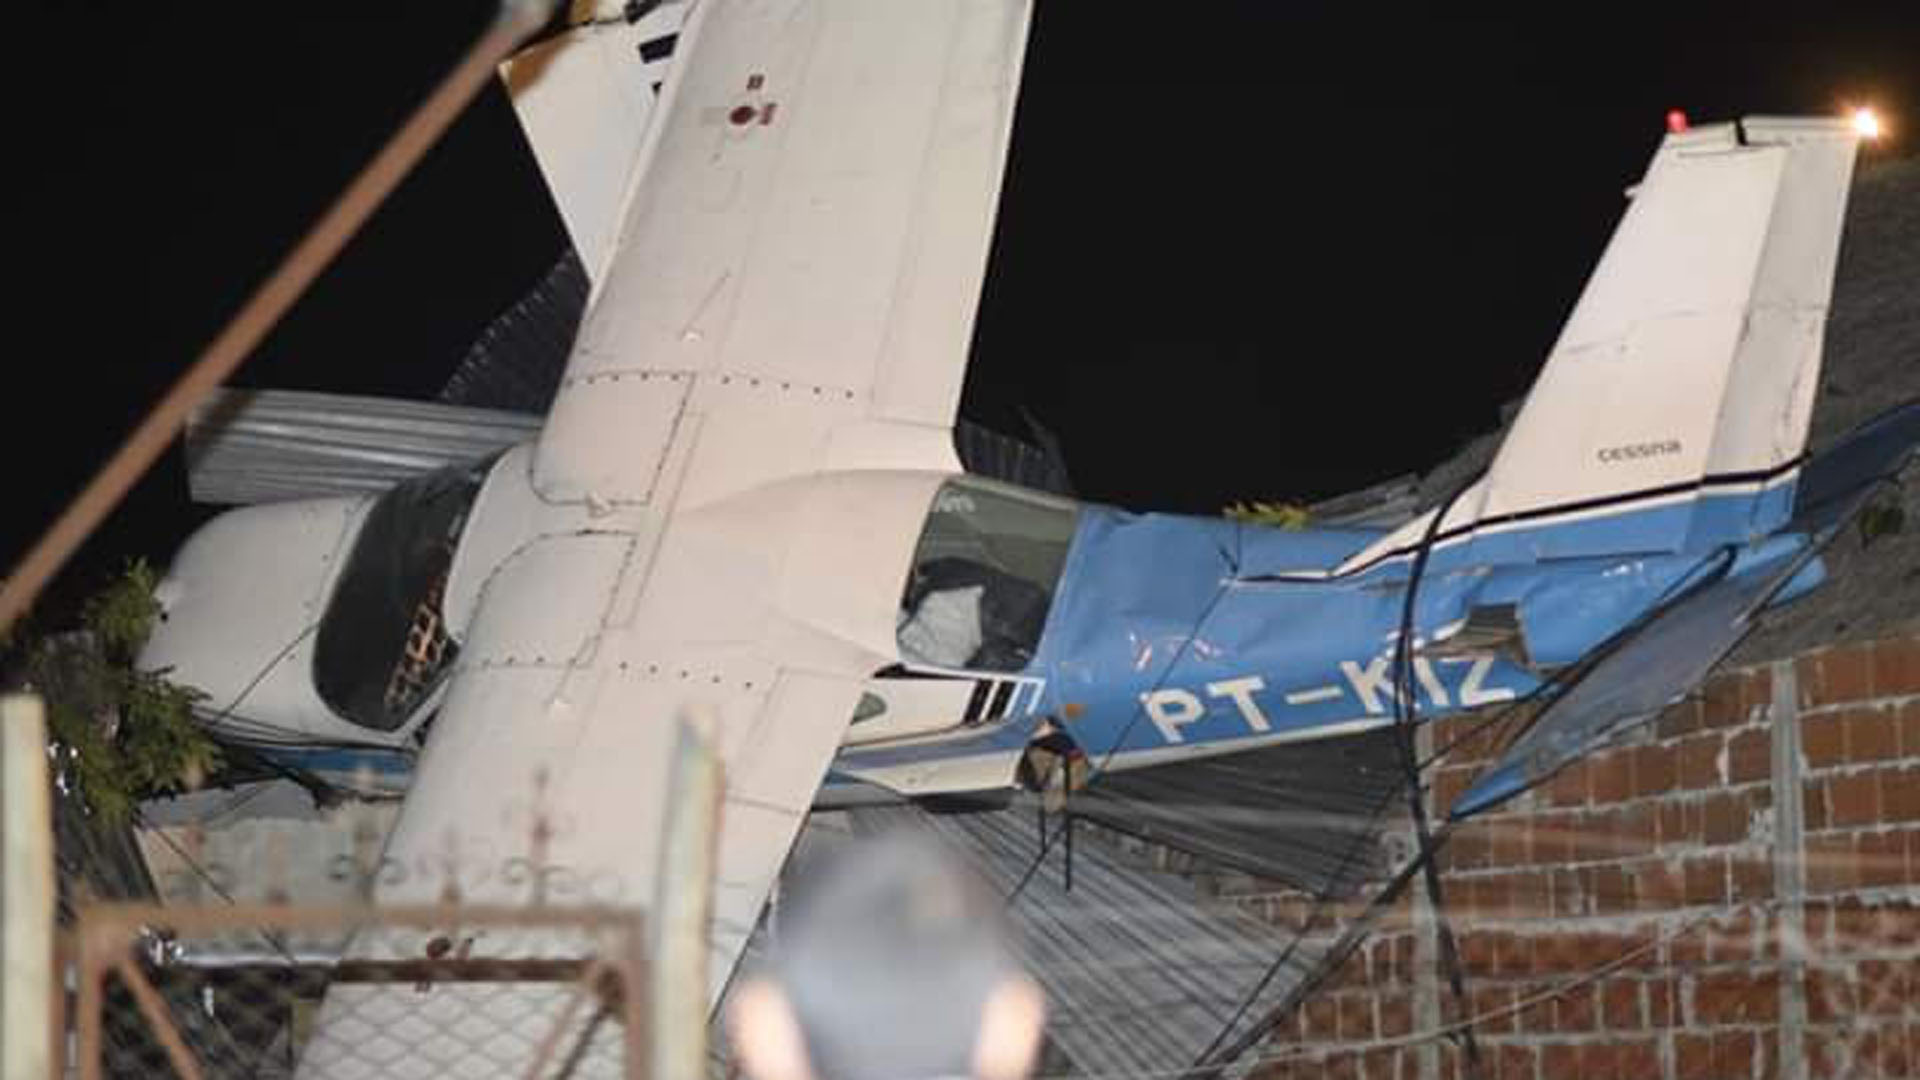 La avioneta cayó sobre una vivienda en construcción y el golpe fue amortiguado por los cables de electricidad. Foto: Gentileza Infobae.